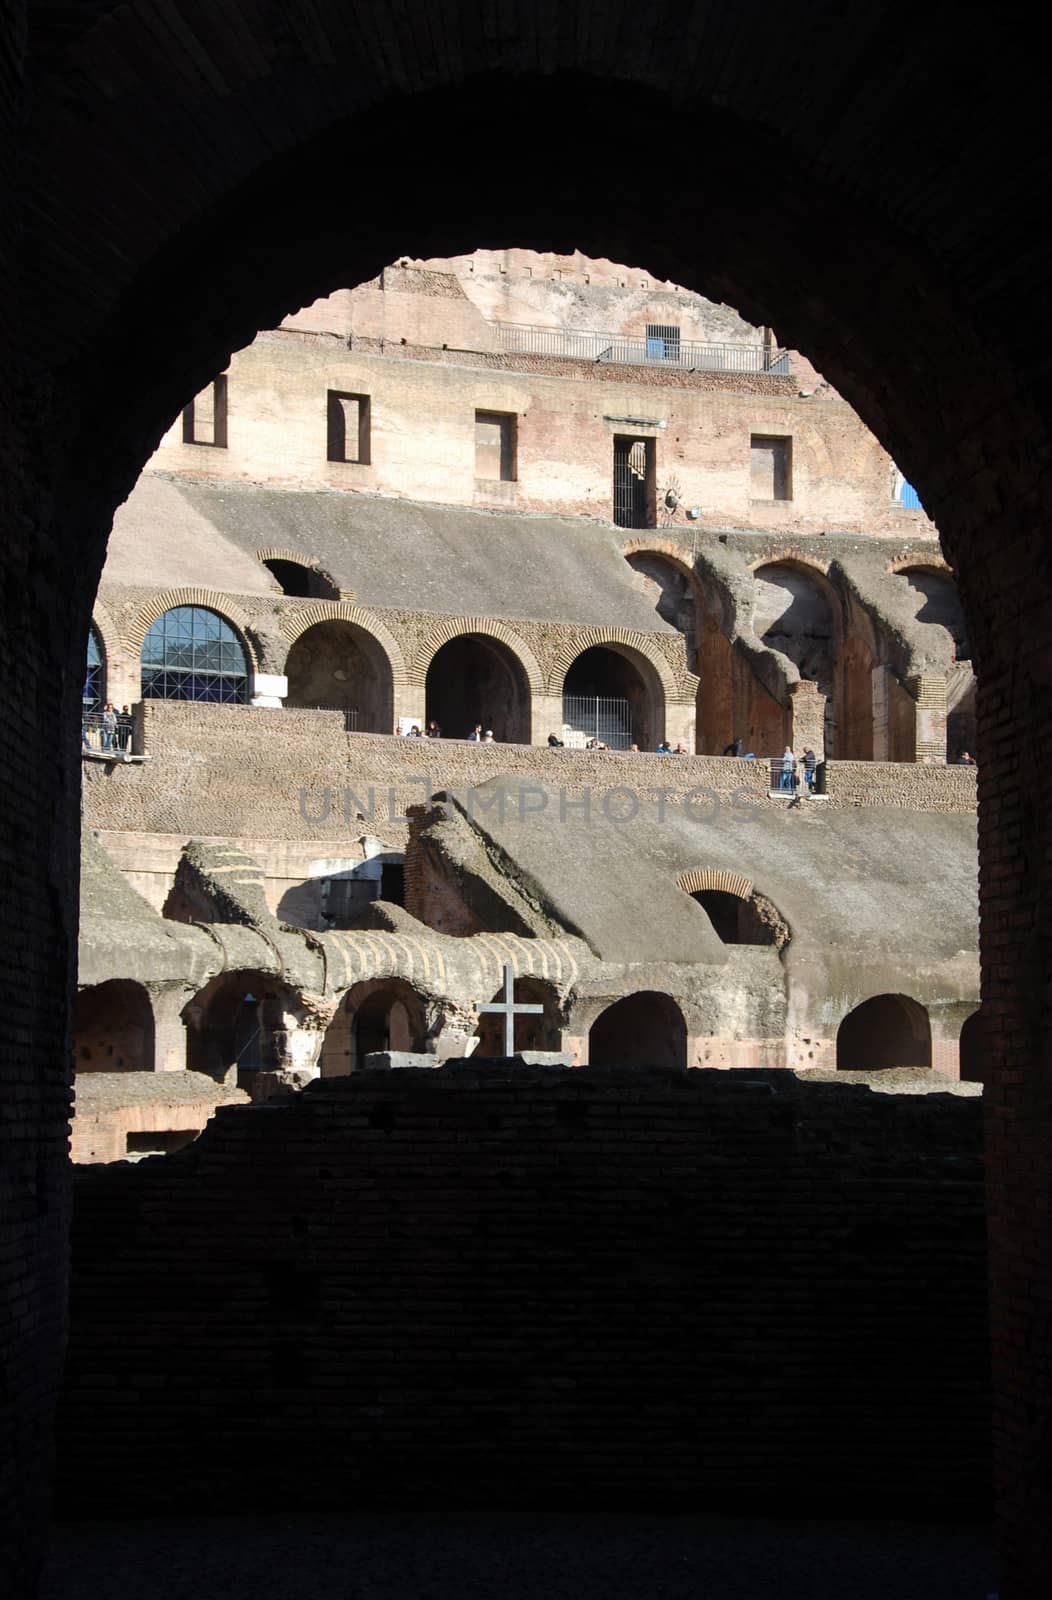 Colosseum in Rome